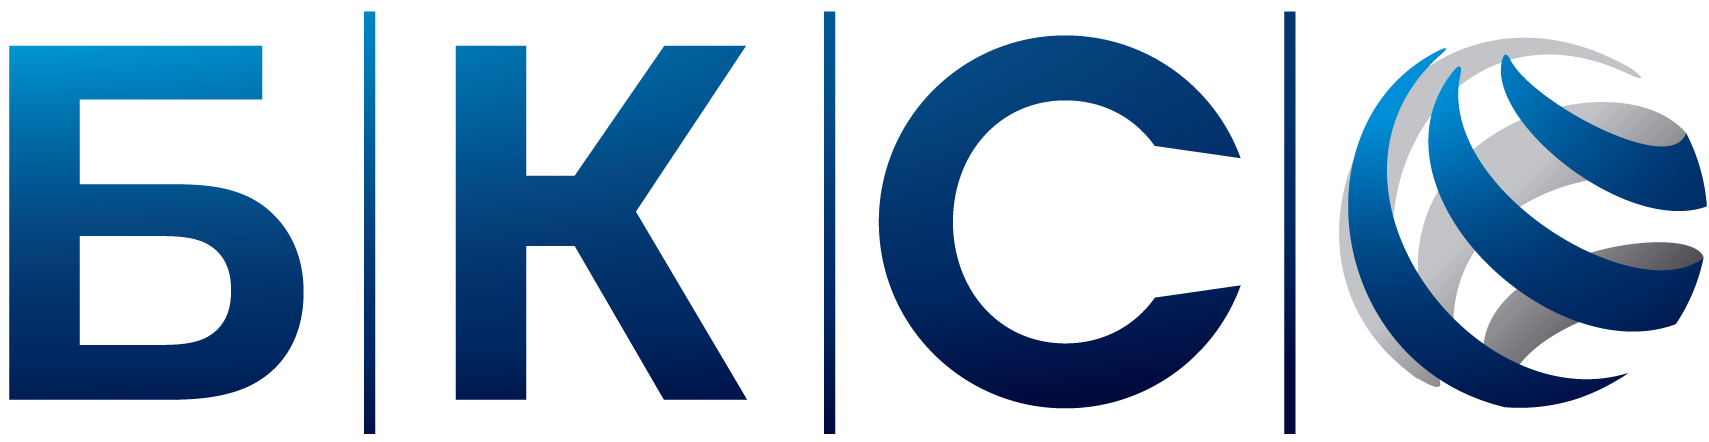 Российская финансовая группа. БКС банк логотип. БКС финансовая группа. БКС брокер лого. БКС инвестиции лого.